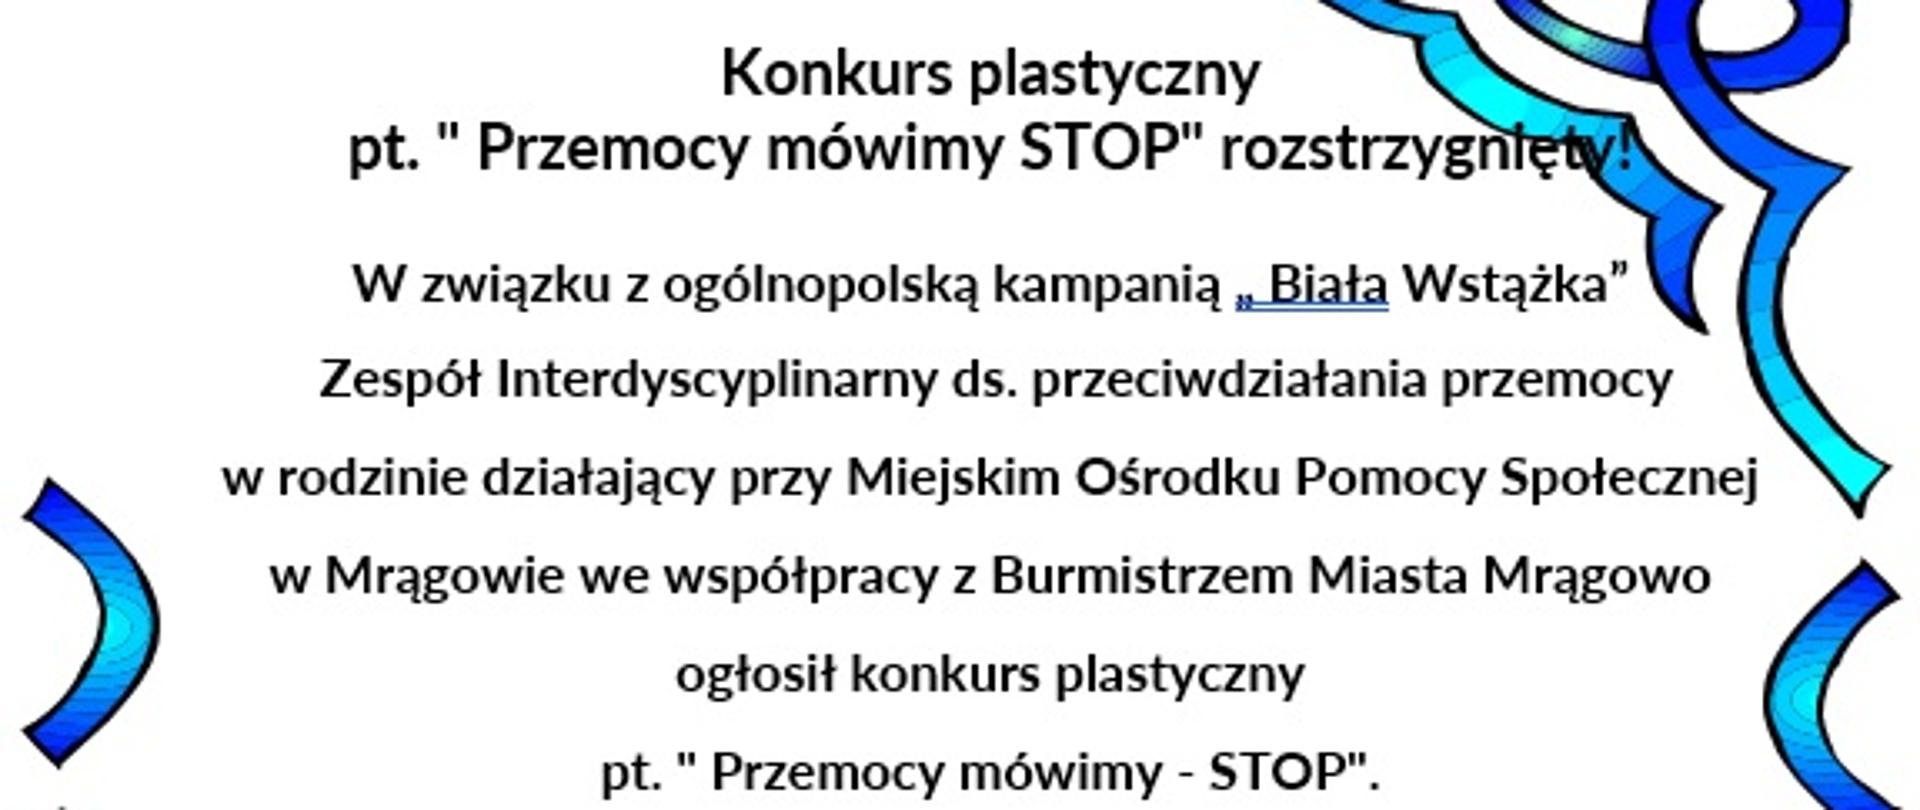 Konkurs plastyczny pt. " Przemocy mówimy STOP"
